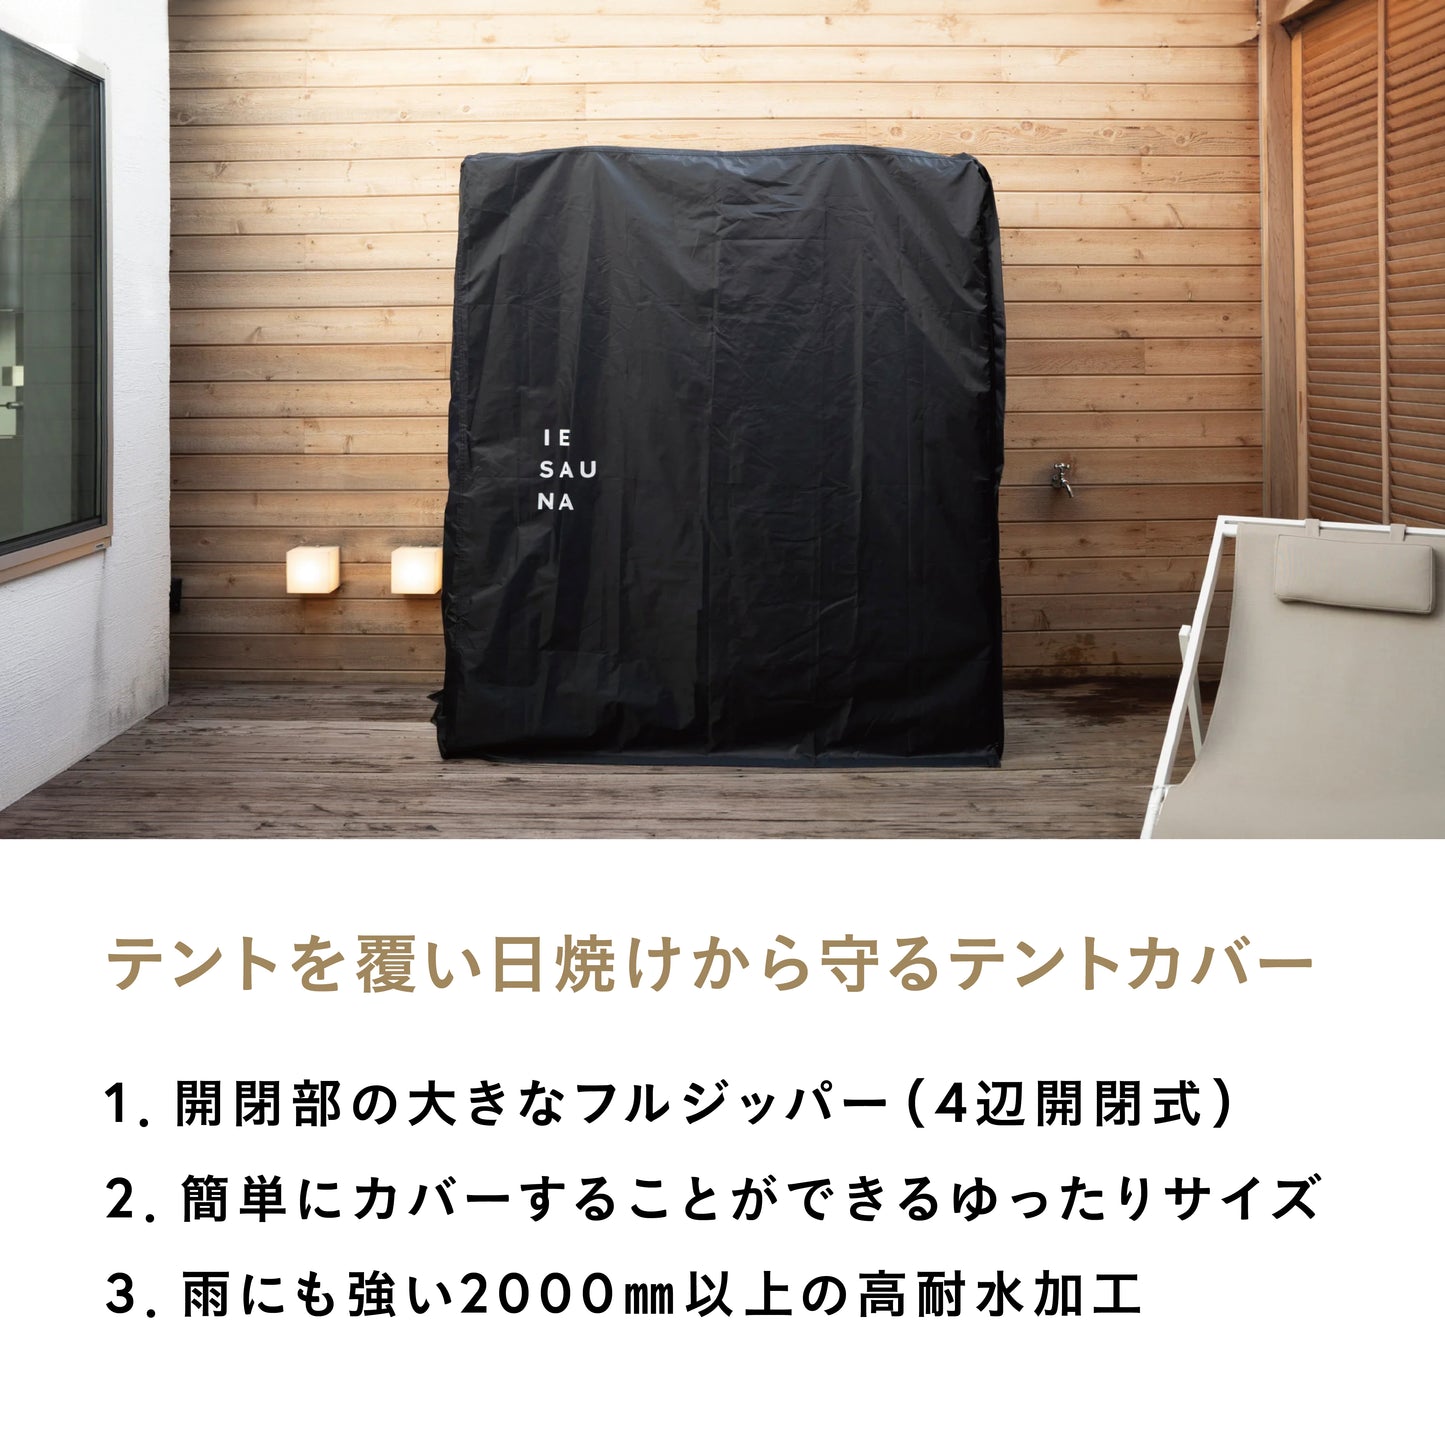 IESAUNA Tent Cover／日焼け防止テントカバー